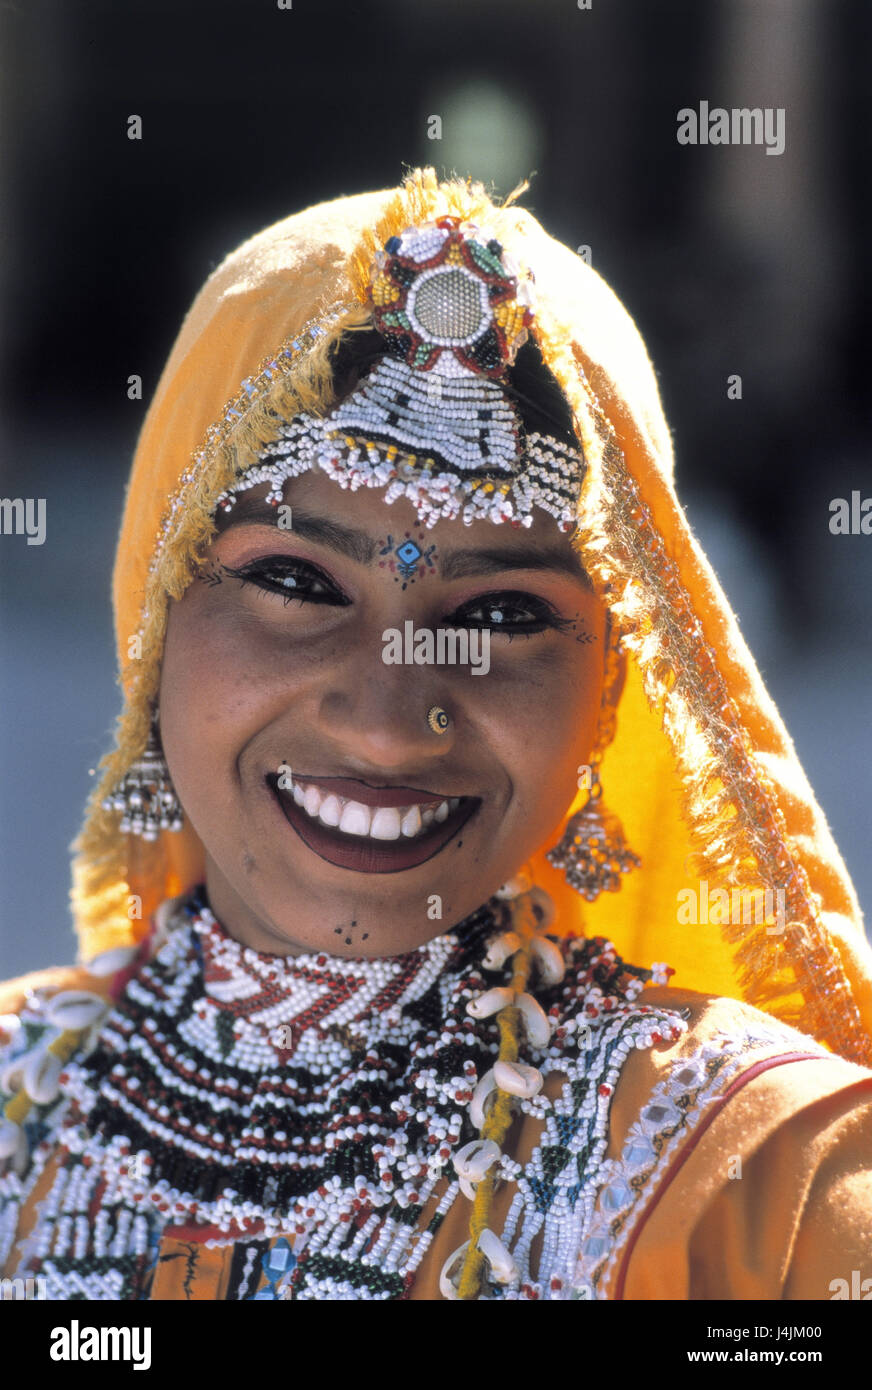 L'Inde, Rajasthan, Jaipur, femme, jeune, vêtements, bijoux,  traditionnellement, la femme portrait portrait, foulard, foulard en tissu,  sourire, friendly, exotique, Indienne, coiffures, bijoux, nasale, basané,  folklore, de beauté, de l'ouverture de la ...